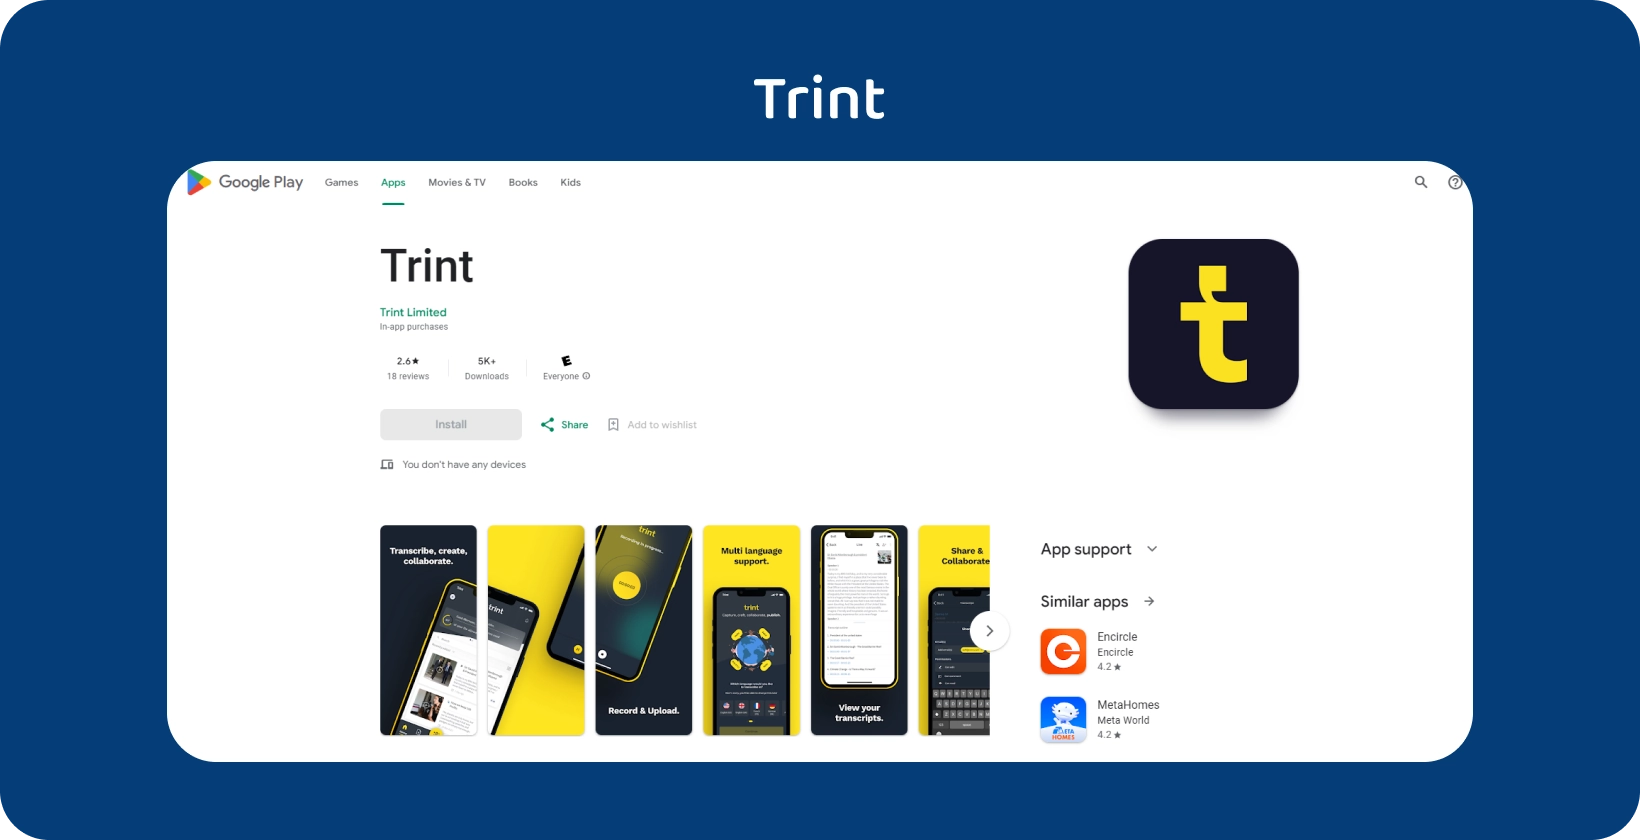 Trint Google Play megjelenített alkalmazás, amely intuitív mobil felülettel kiemeli átírási szolgáltatásait.